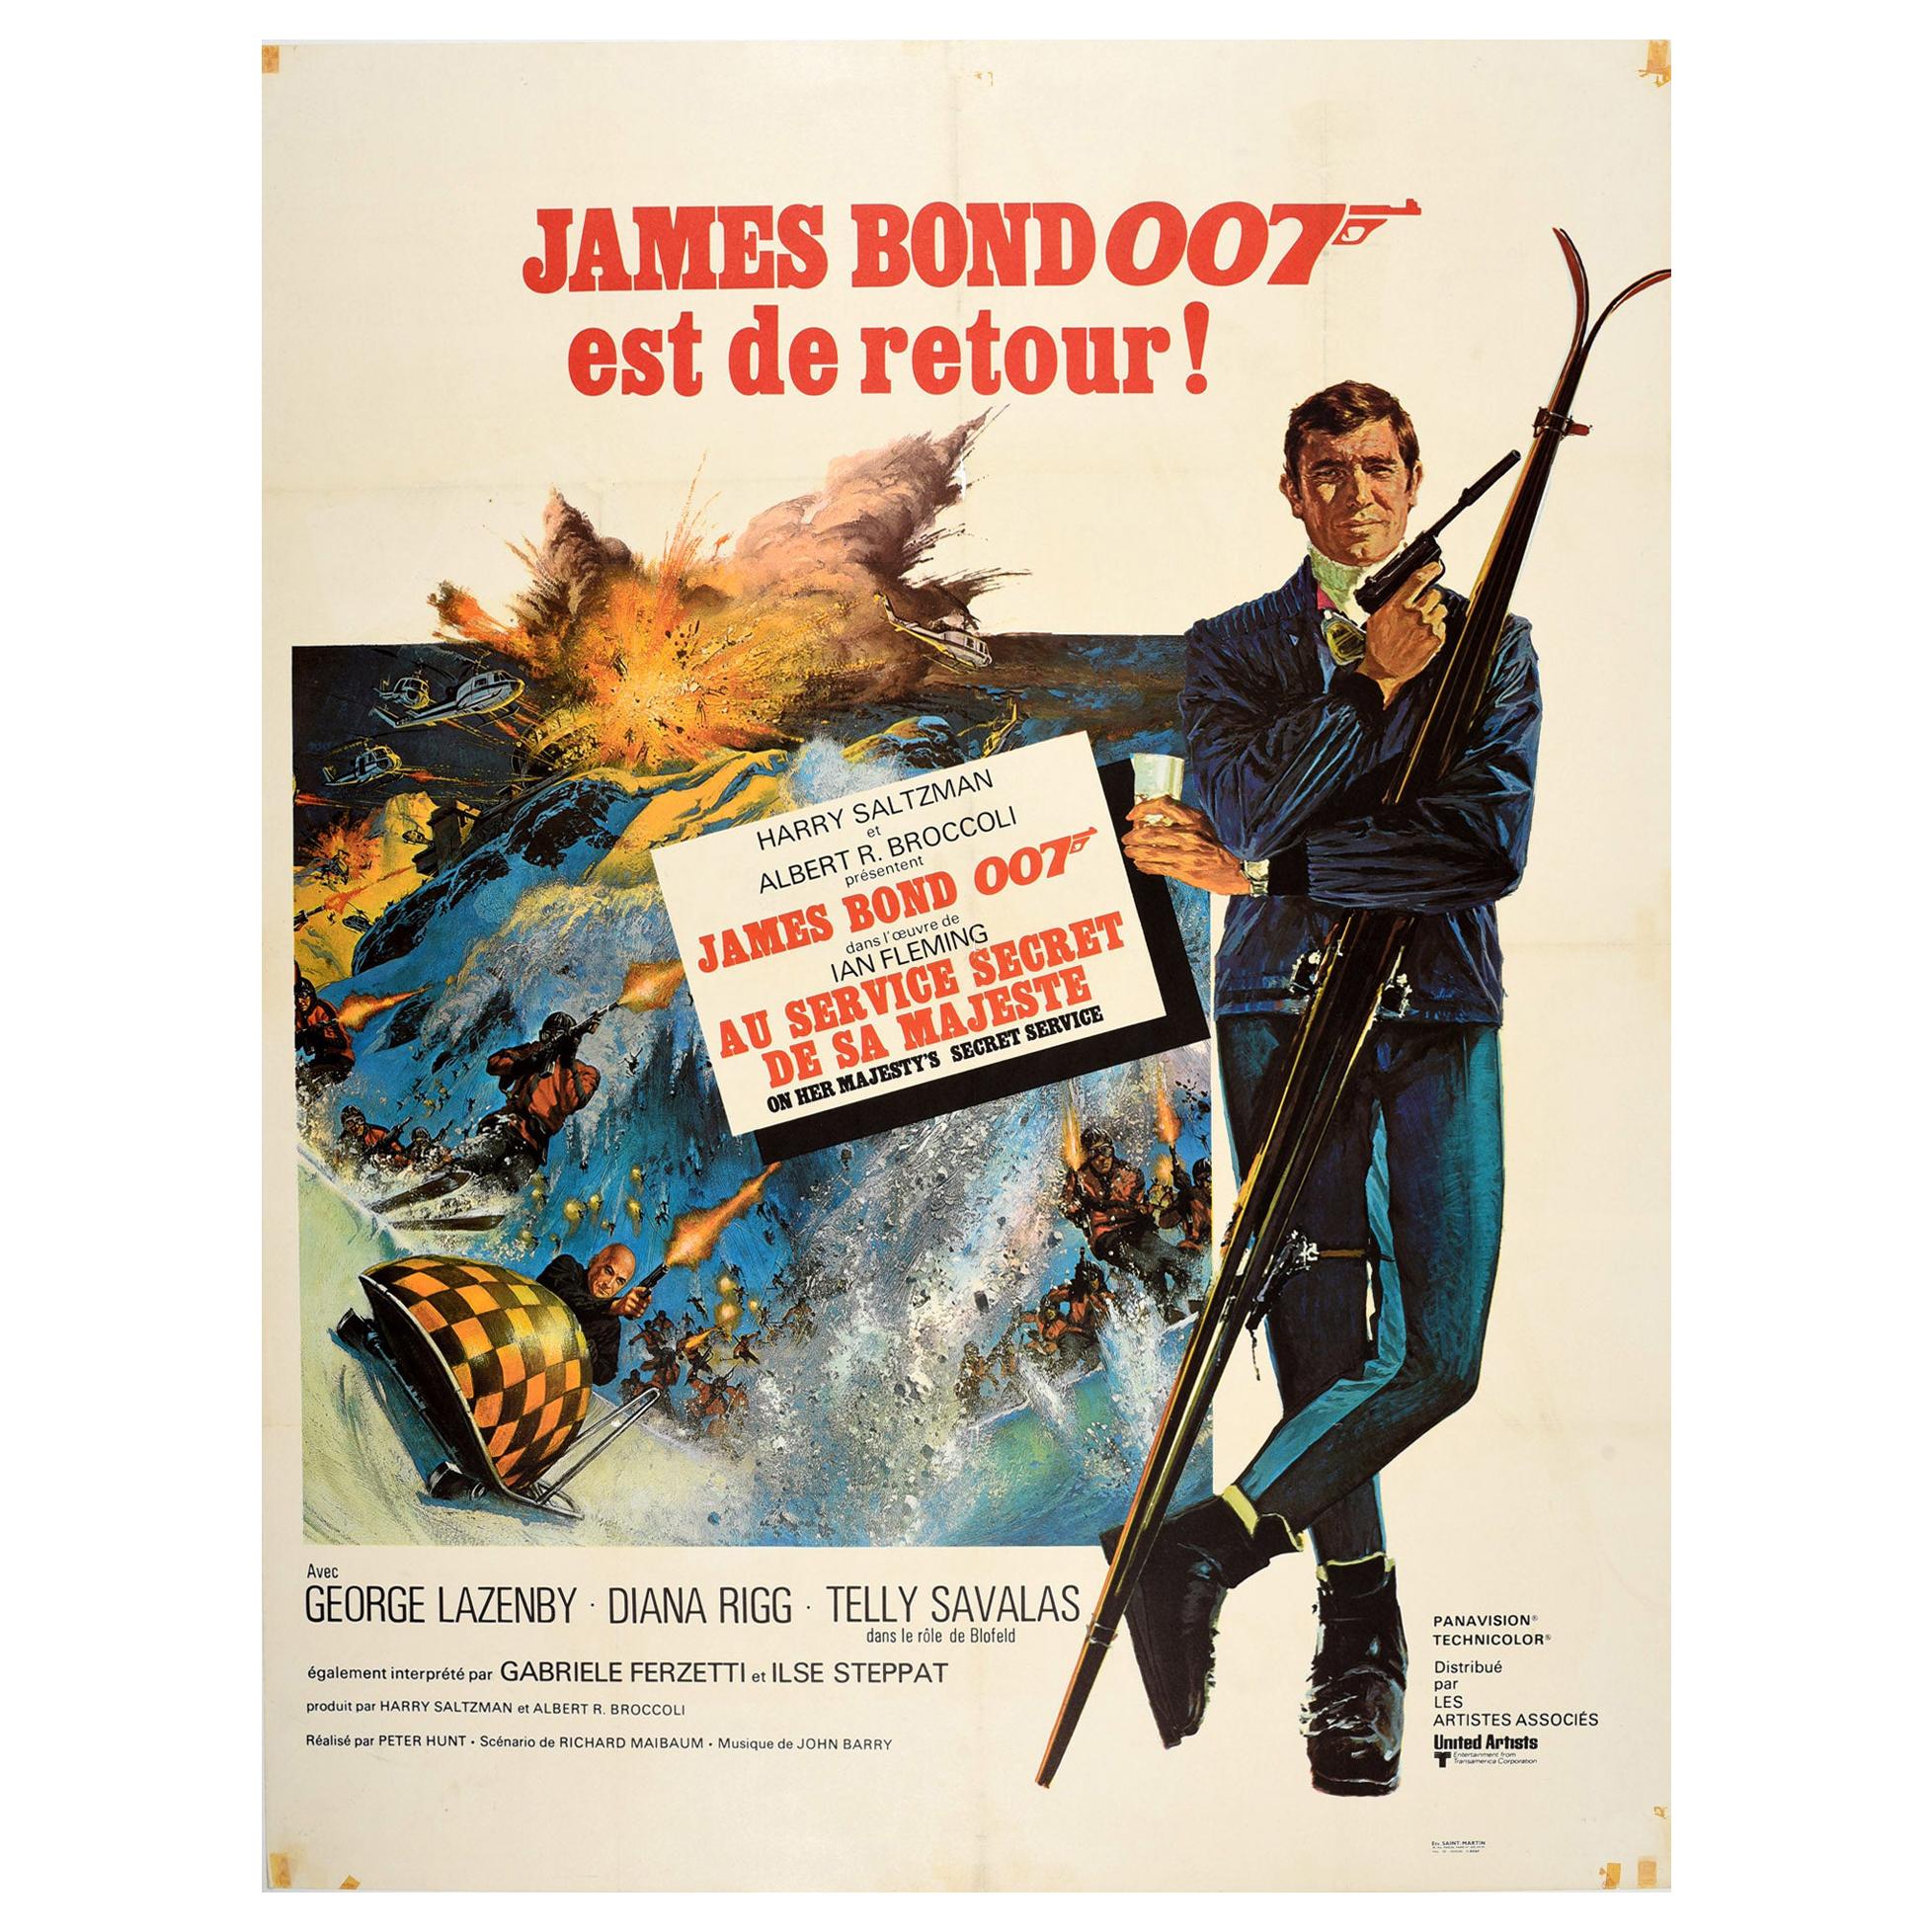 Original Vintage Film Poster James Bond On Her Majesty's Secret Service 007 Skis